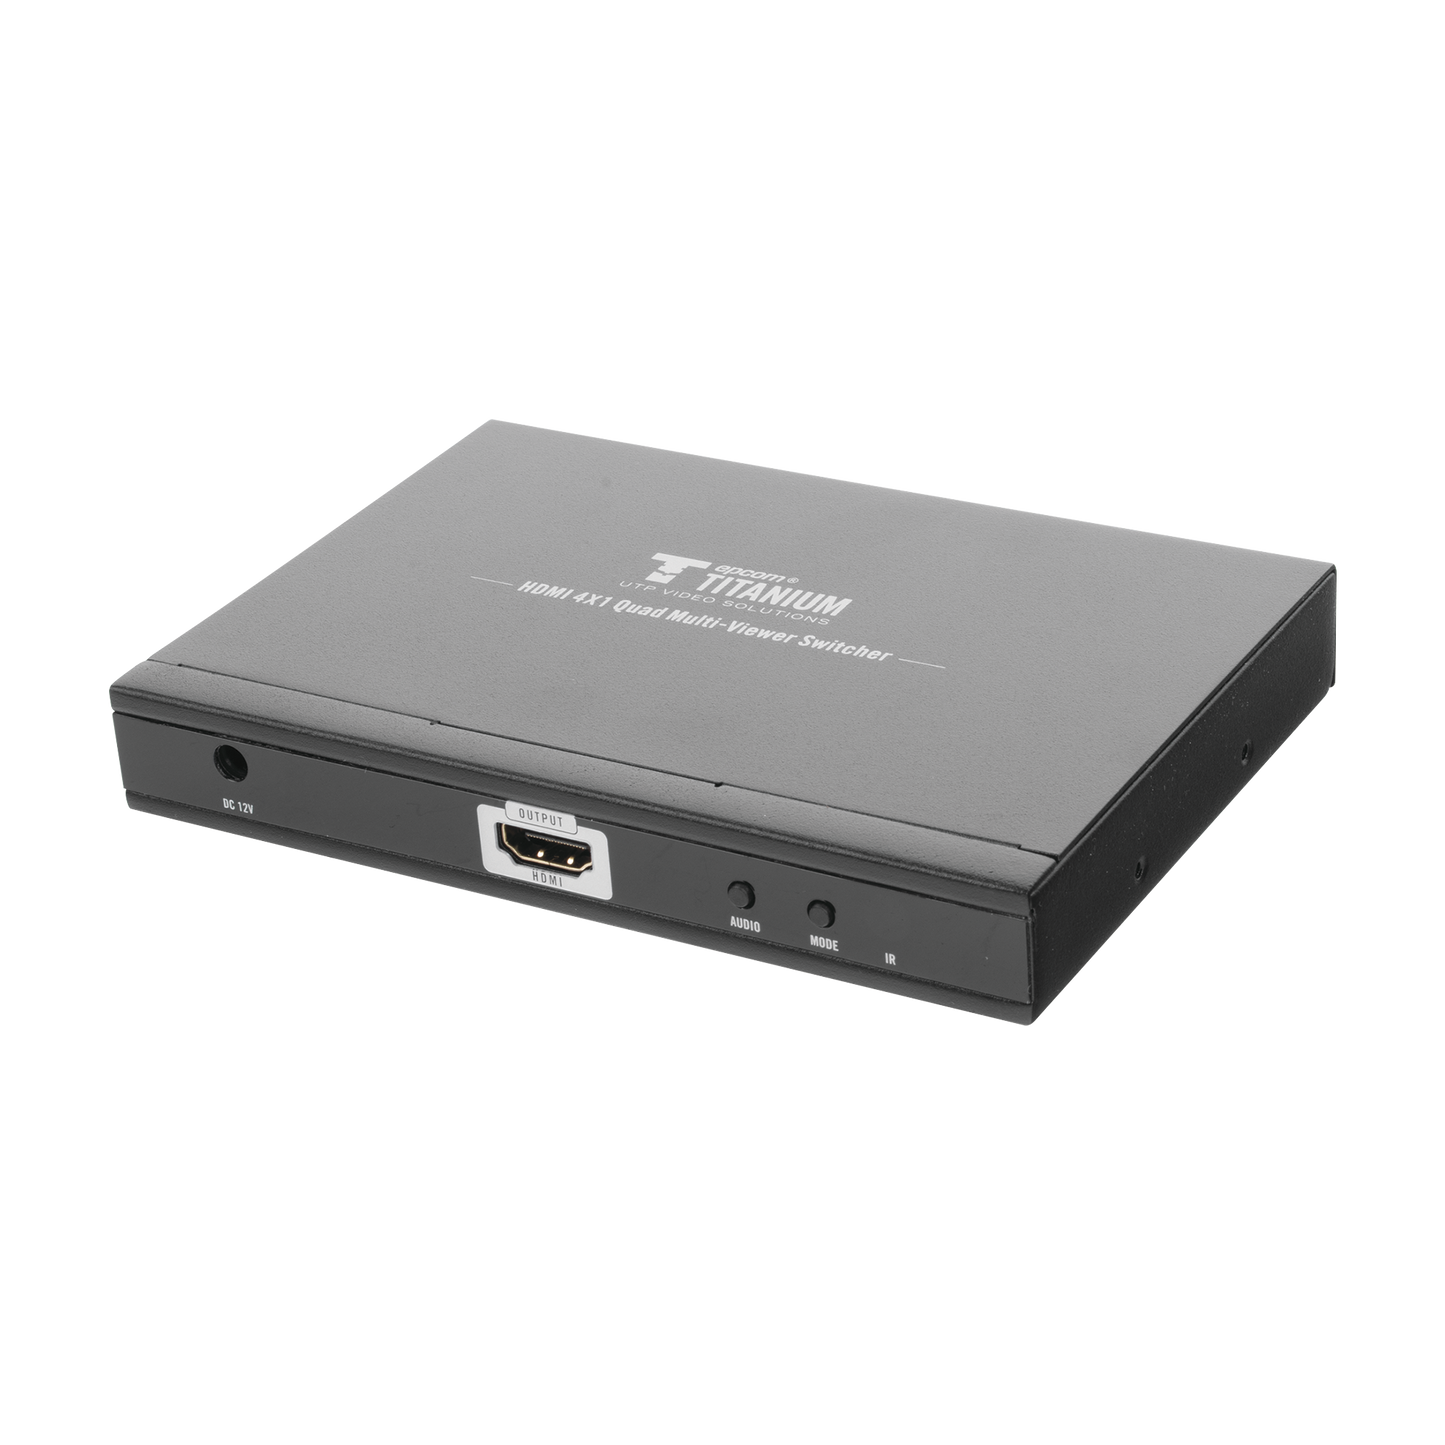 MATRICIAL DE VIDEO HDMI 4X1 (Divisor) / 4 Entradas a 1 Salida HDMI /  1080p @ 60Hz / Diferentes modos de Display / Pantalla completa, Modo Dual, Modo Quad / Conmutación por Botón o Control Remoto / Botón de Control de audio.